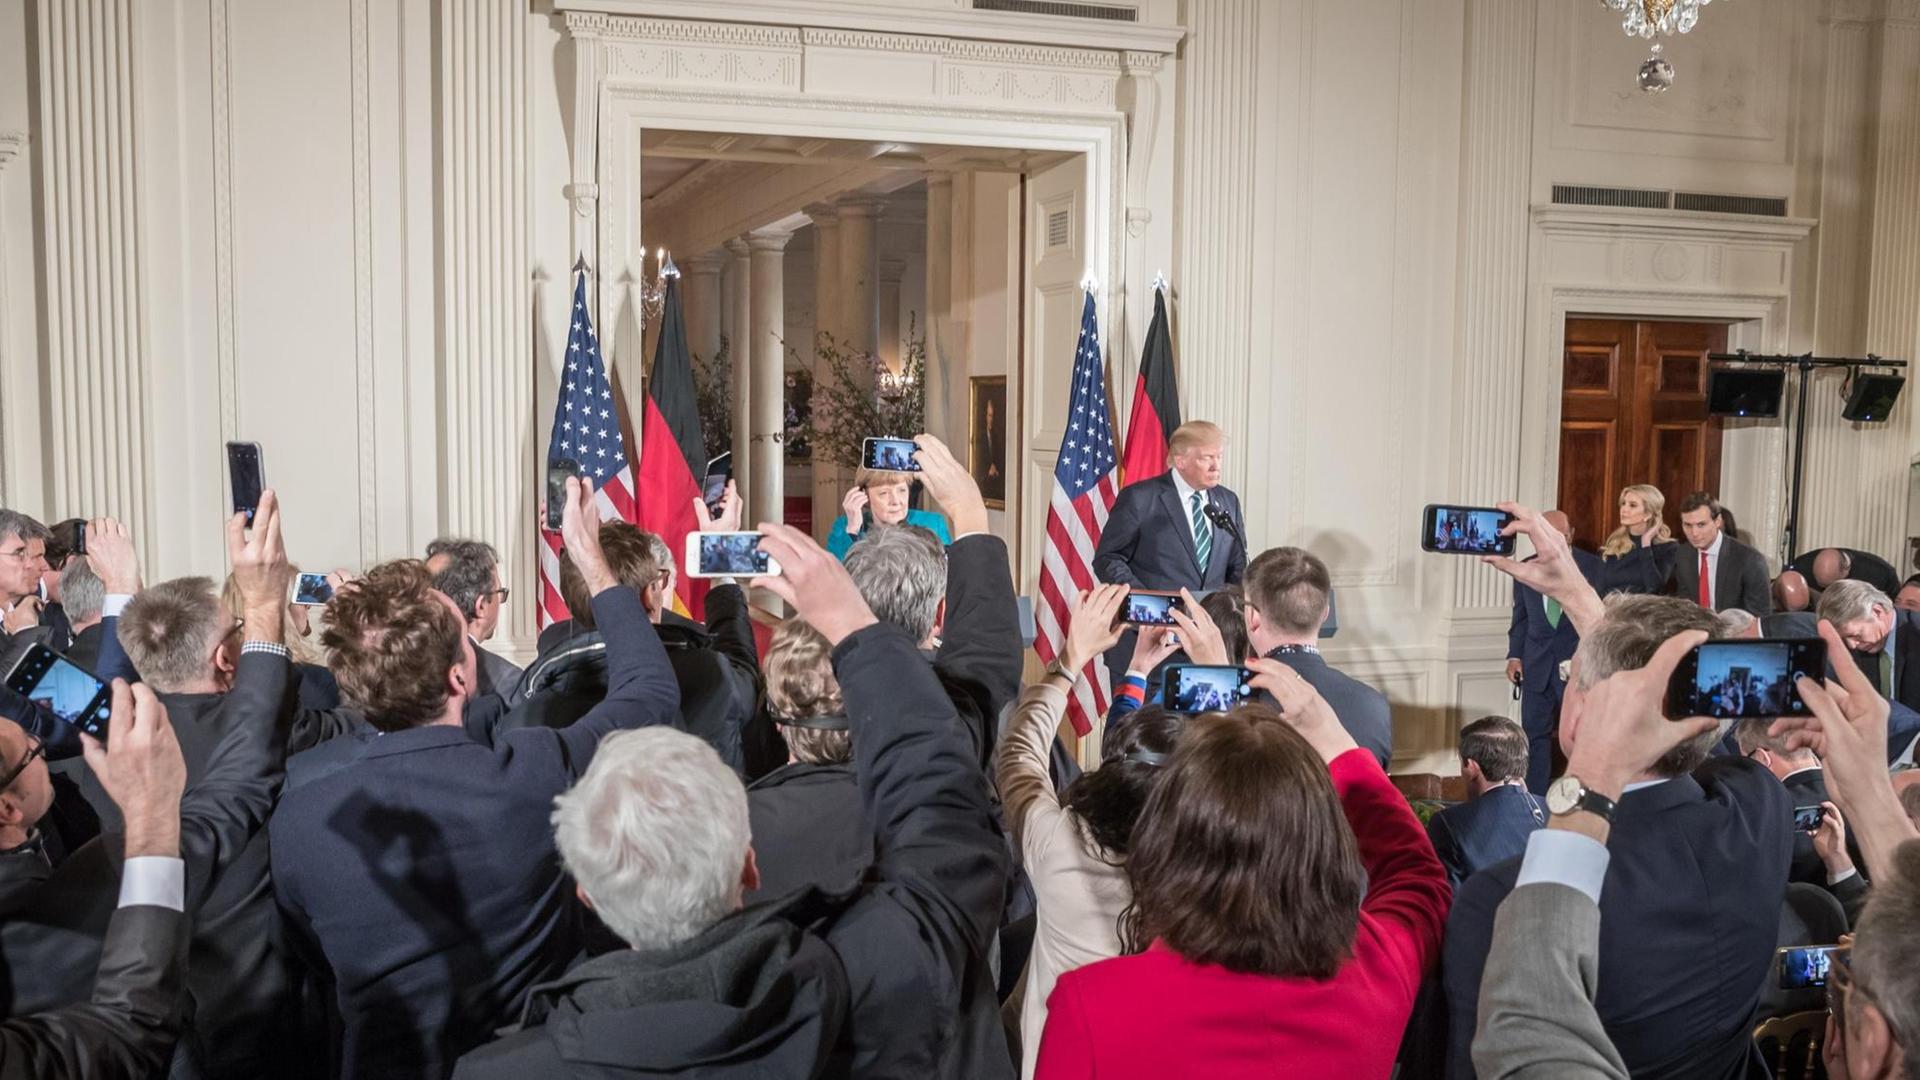 Journalisten fotografieren US-Präsident Donald Trump und Bundeskanzlerin Angela Merkel im Weißen Haus.